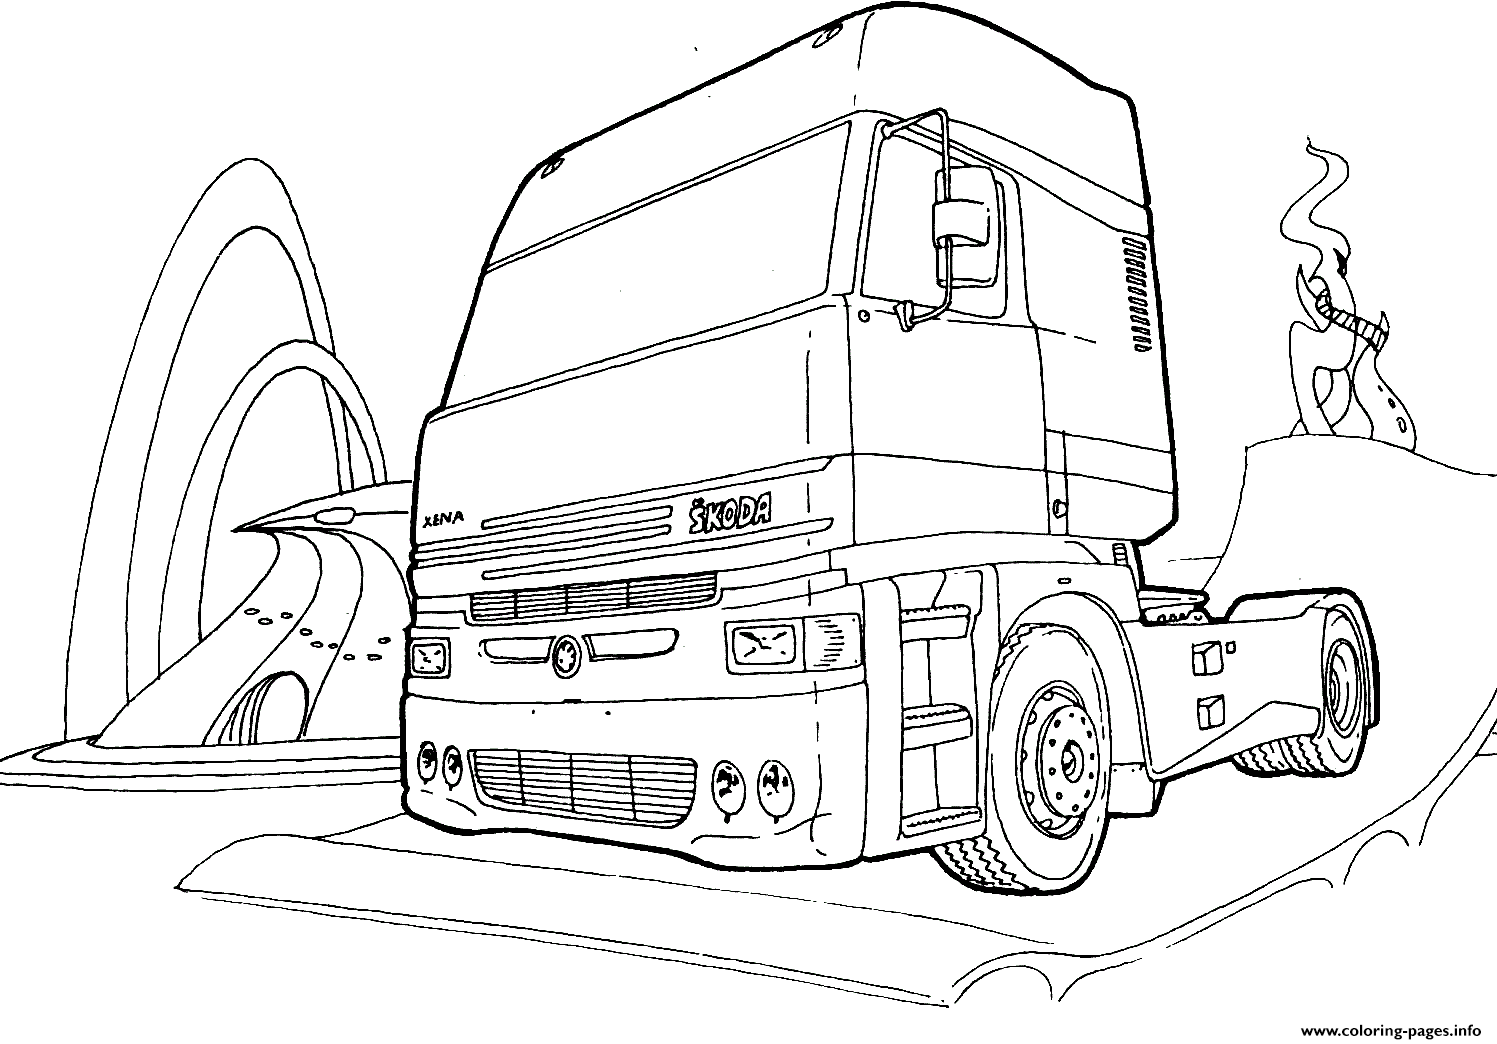 Truck Skoda coloring